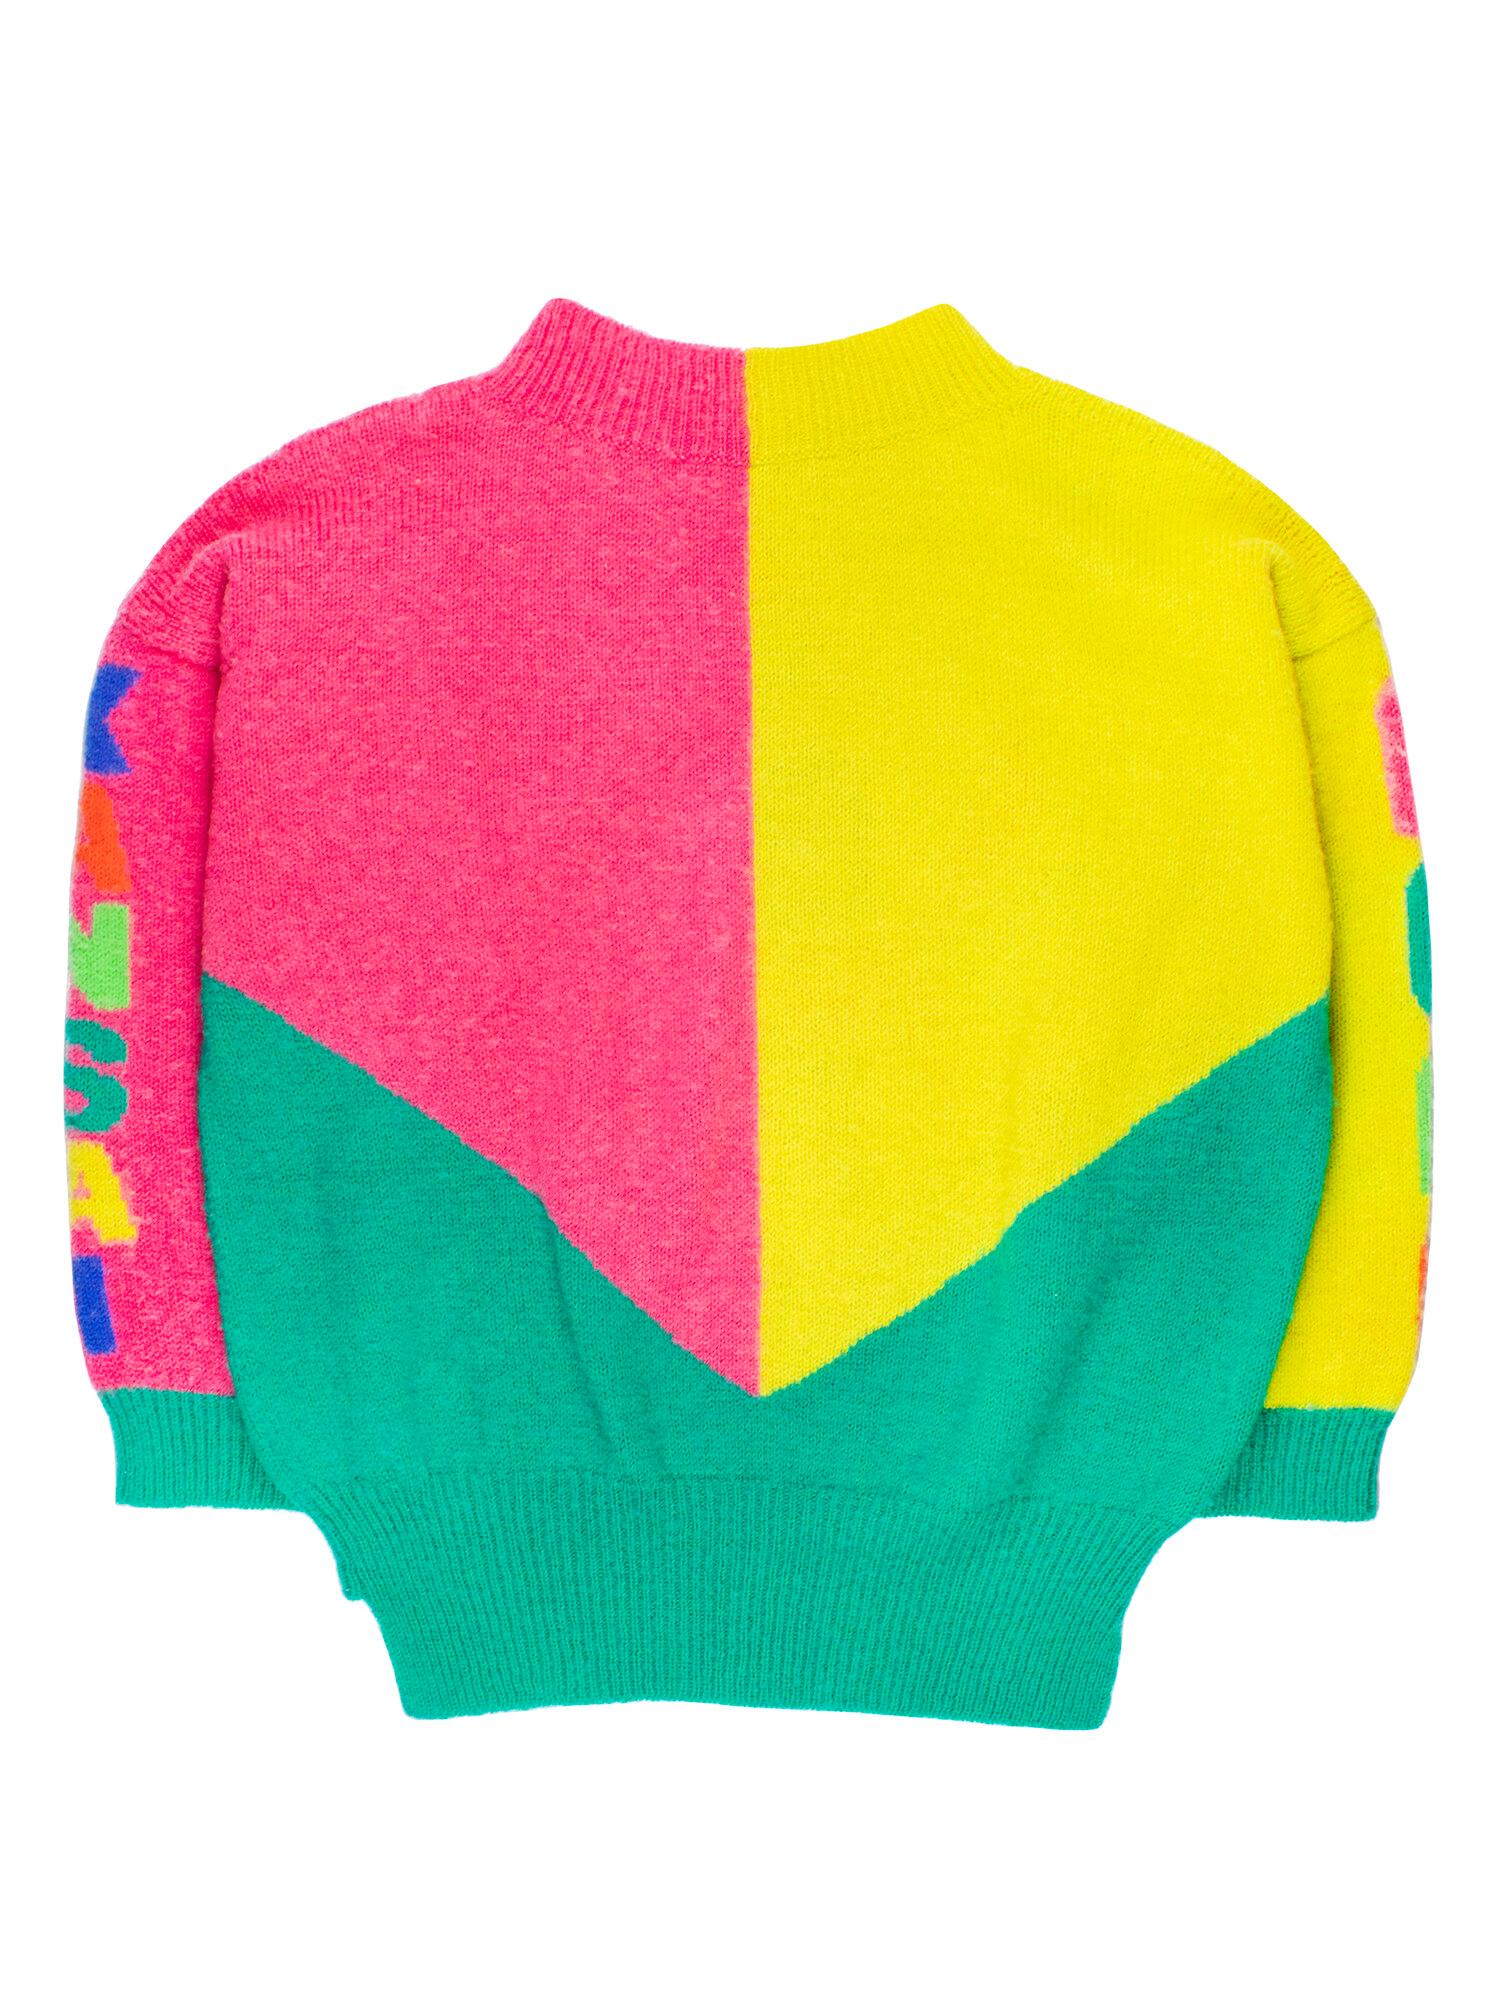 yamamoto kansai sweater